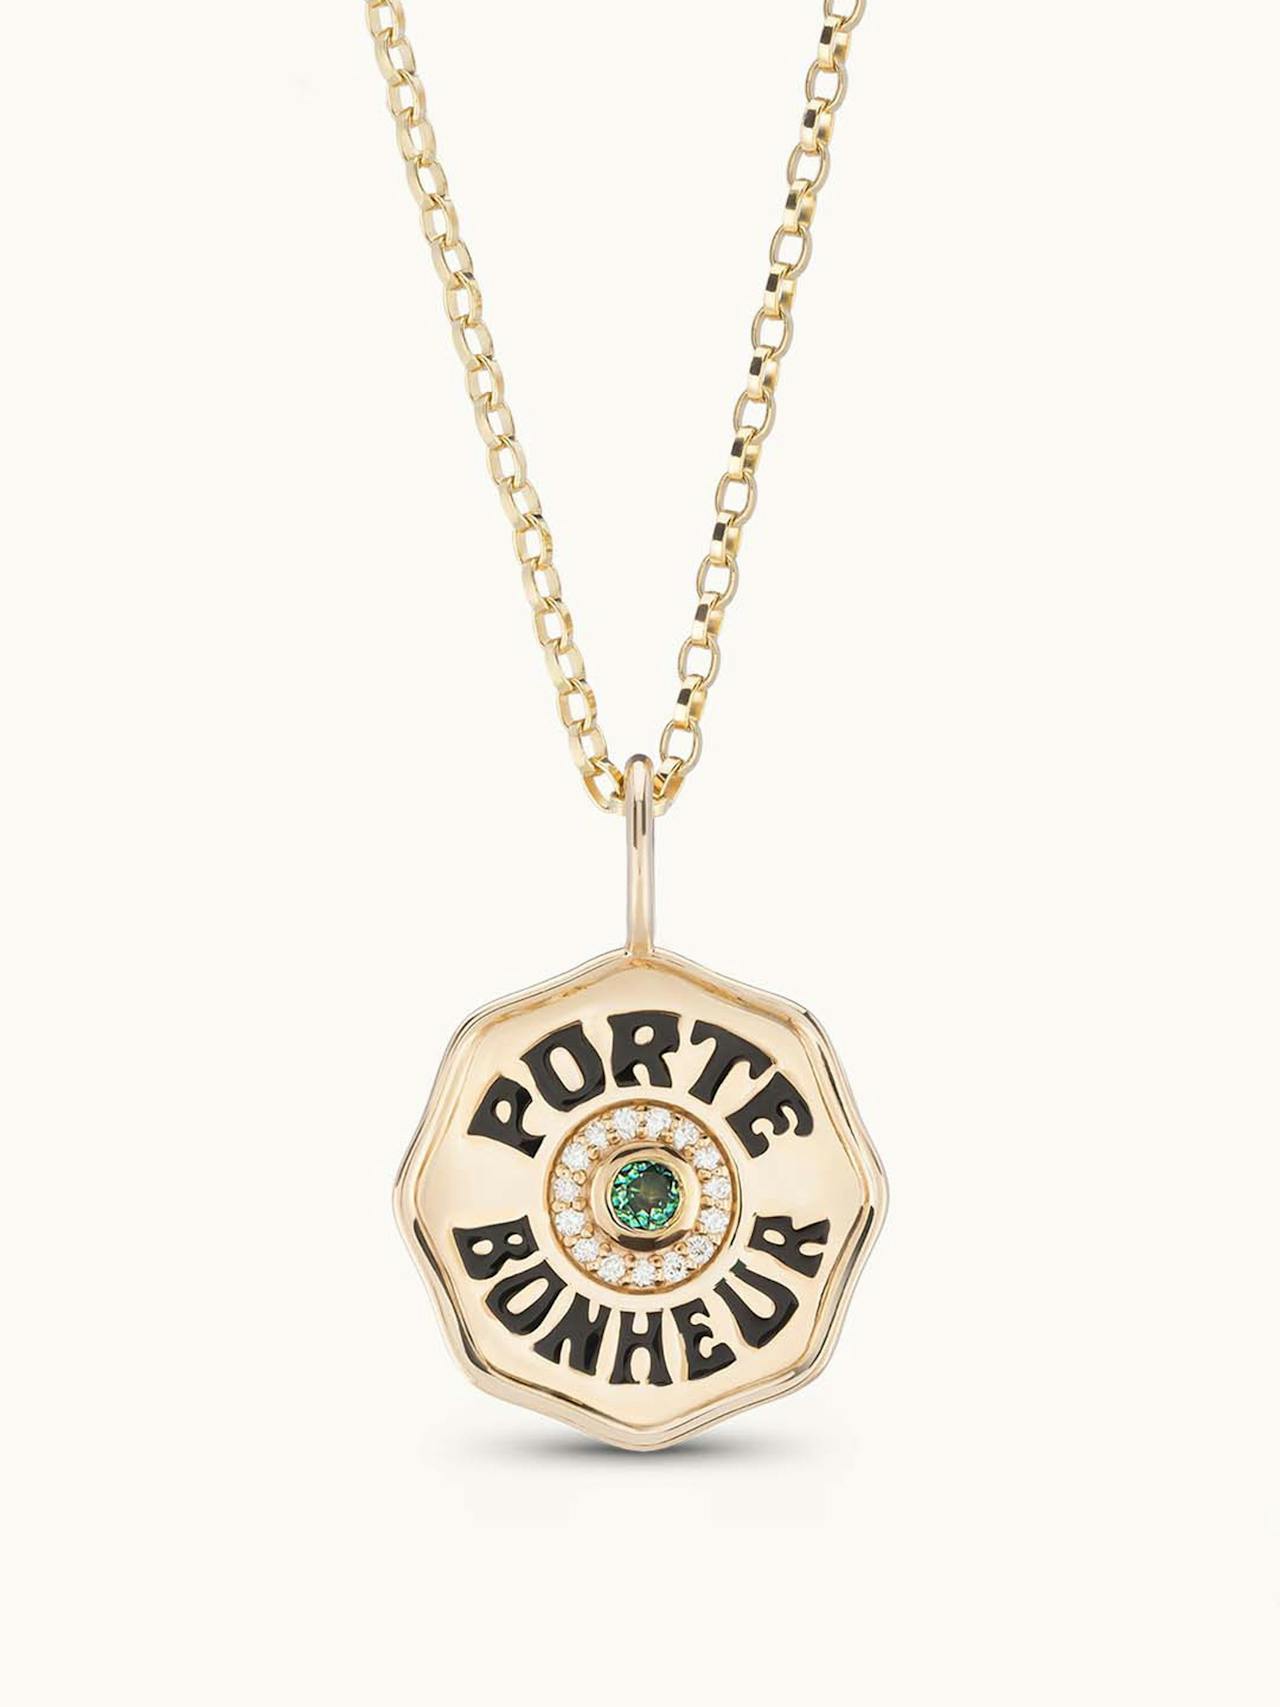 Mini Porte Bonheur necklace in diamond halo and emerald